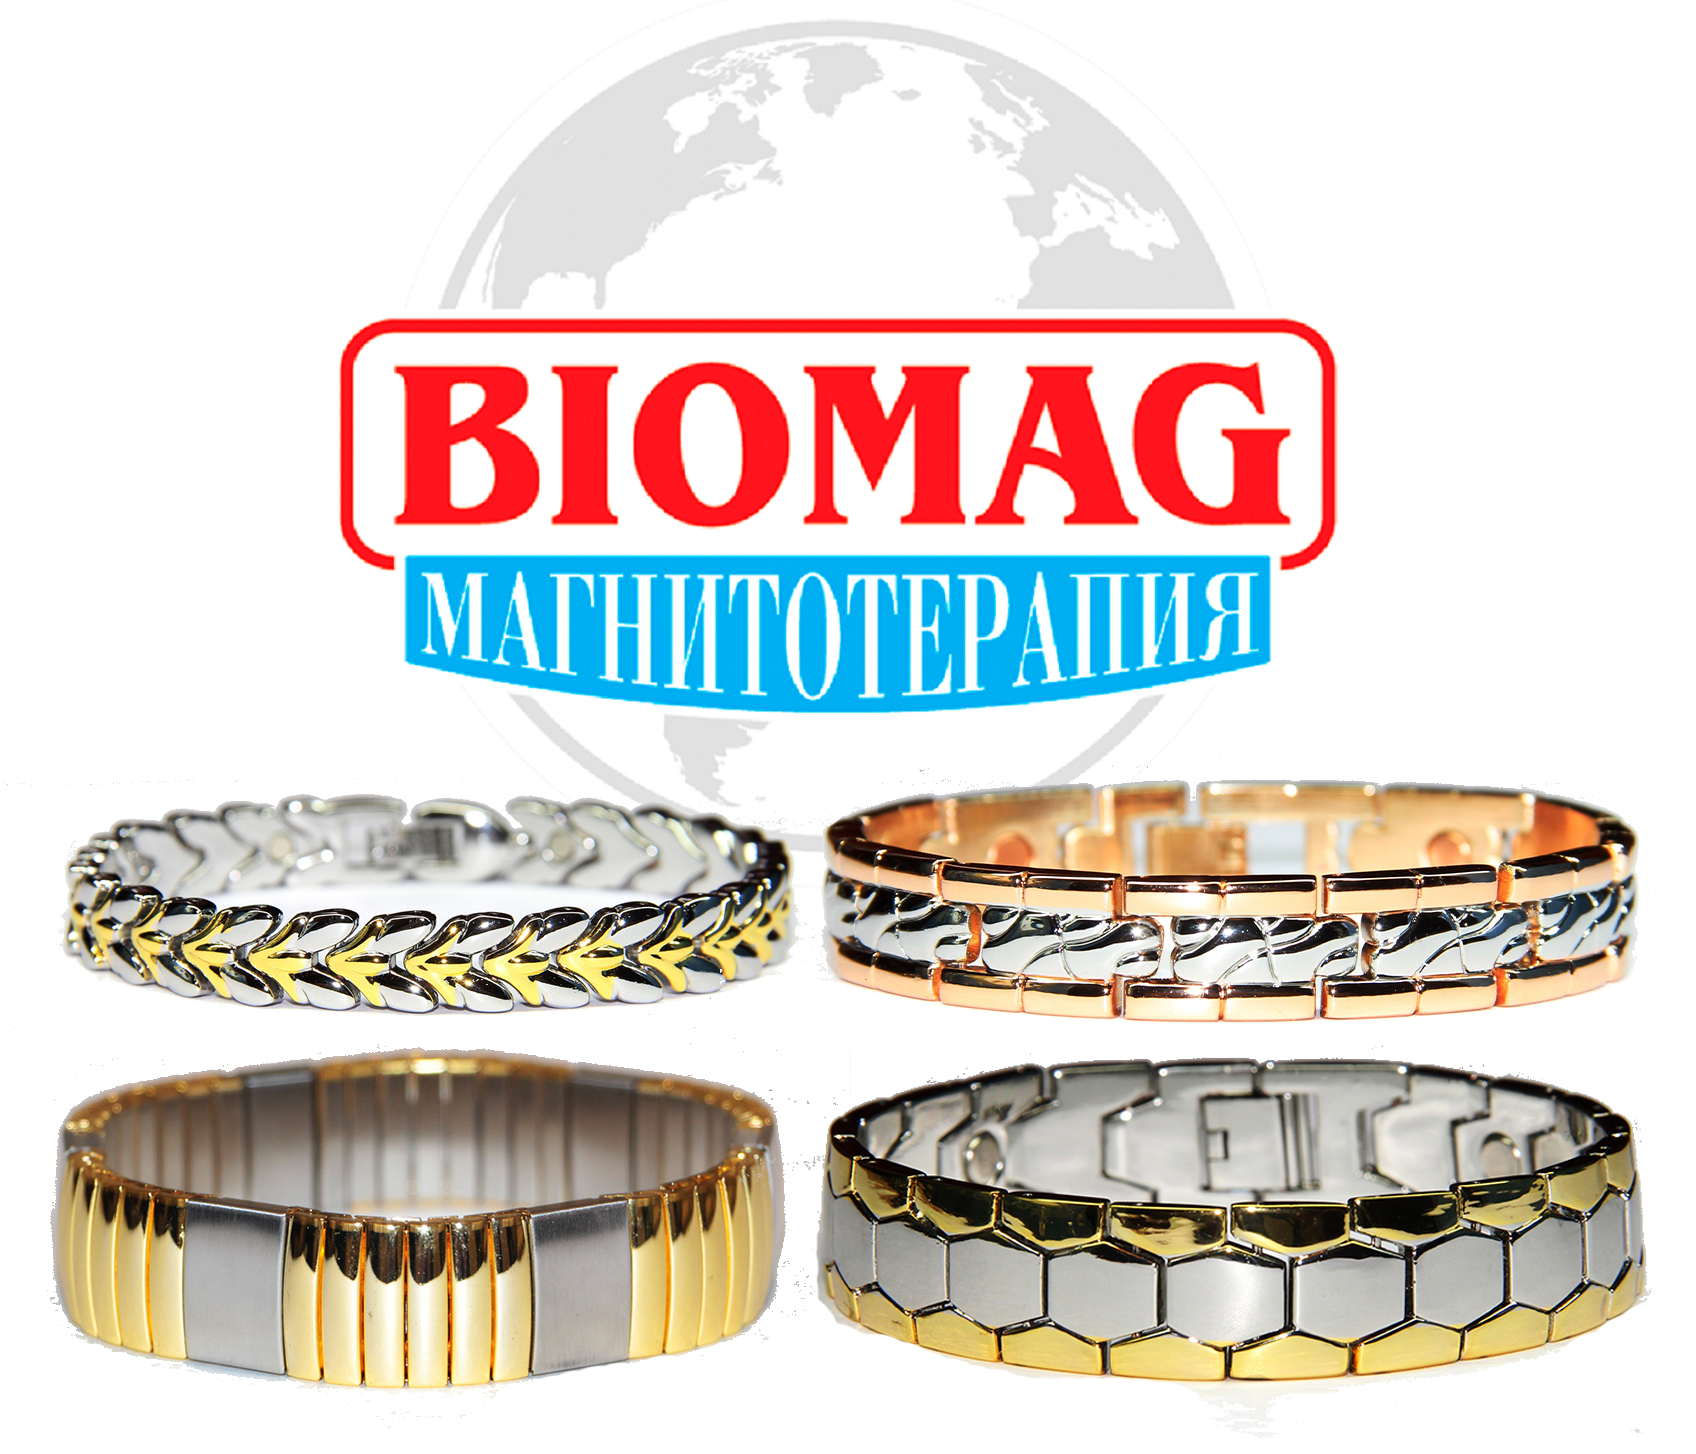 Какими лечебными свойствами обладают магнитные турмалиновые браслеты ООО "БИОМАГ"